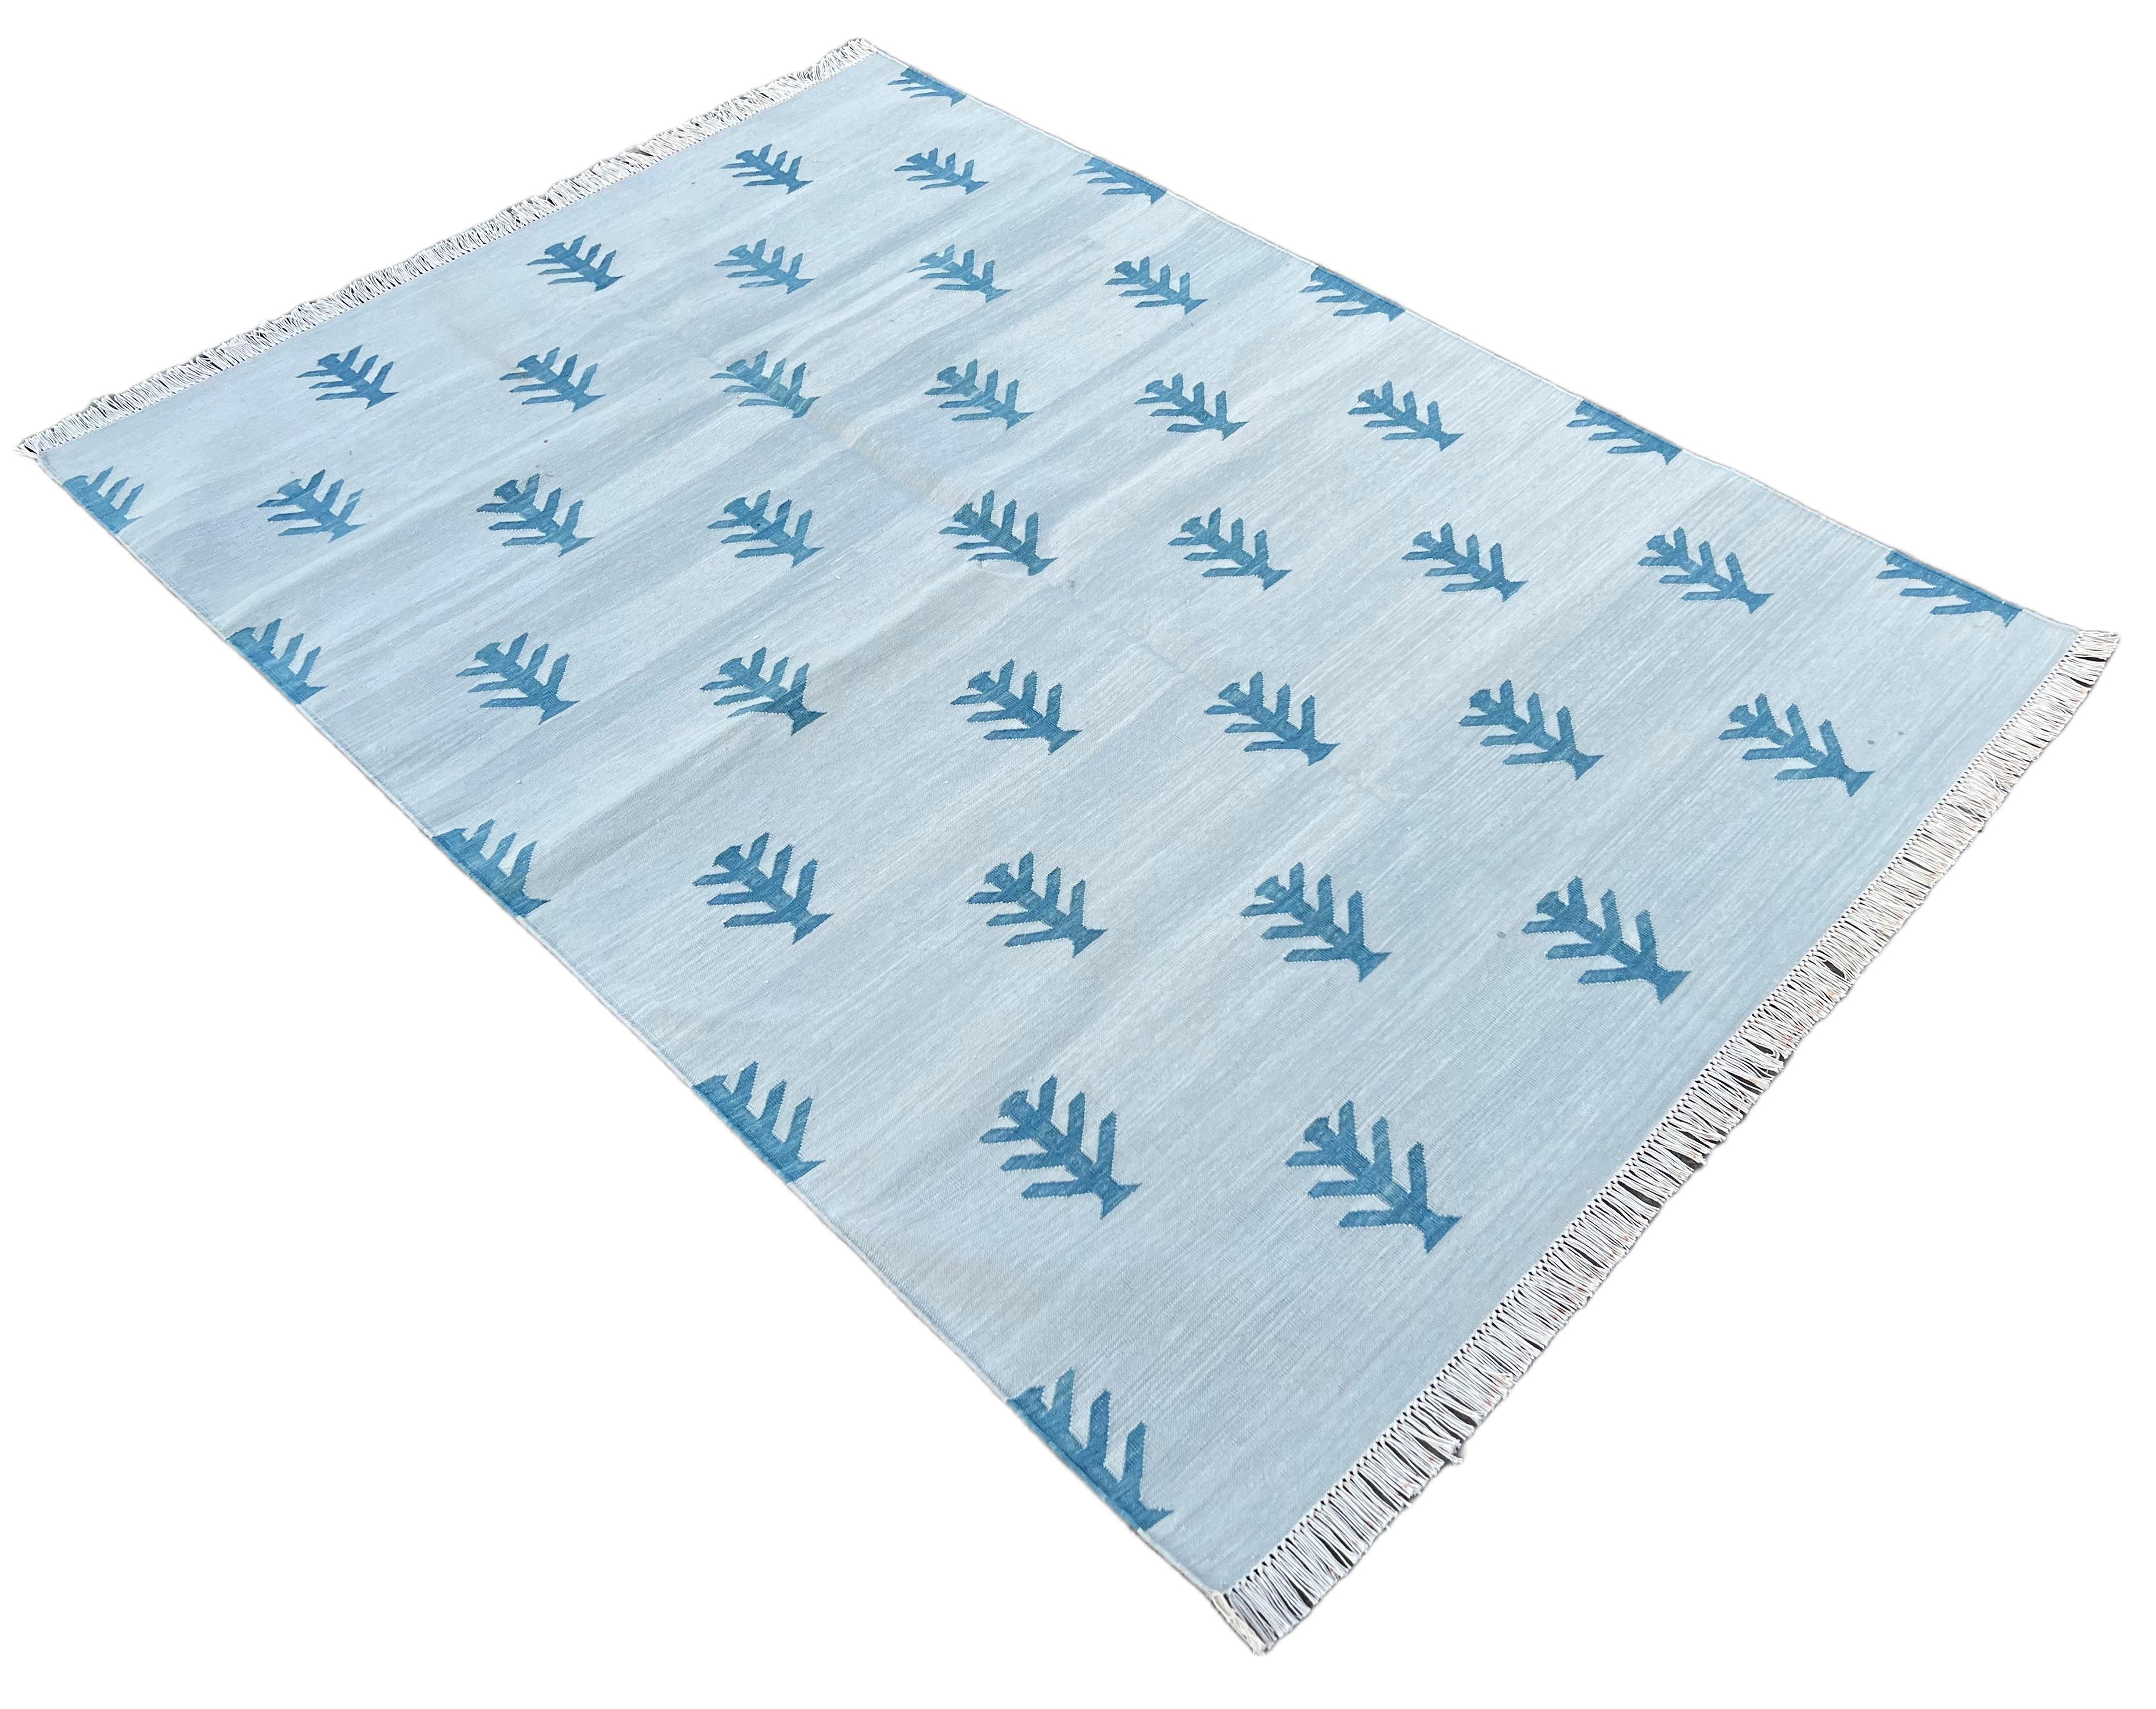 Baumwolle pflanzlich gefärbt Reversible Grau und Teal Blau Baum gemusterten indischen Teppich - 4'x6'
Diese speziellen flachgewebten Dhurries werden aus 15-fachem Garn aus 100% Baumwolle handgewebt. Aufgrund der speziellen Fertigungstechniken, die